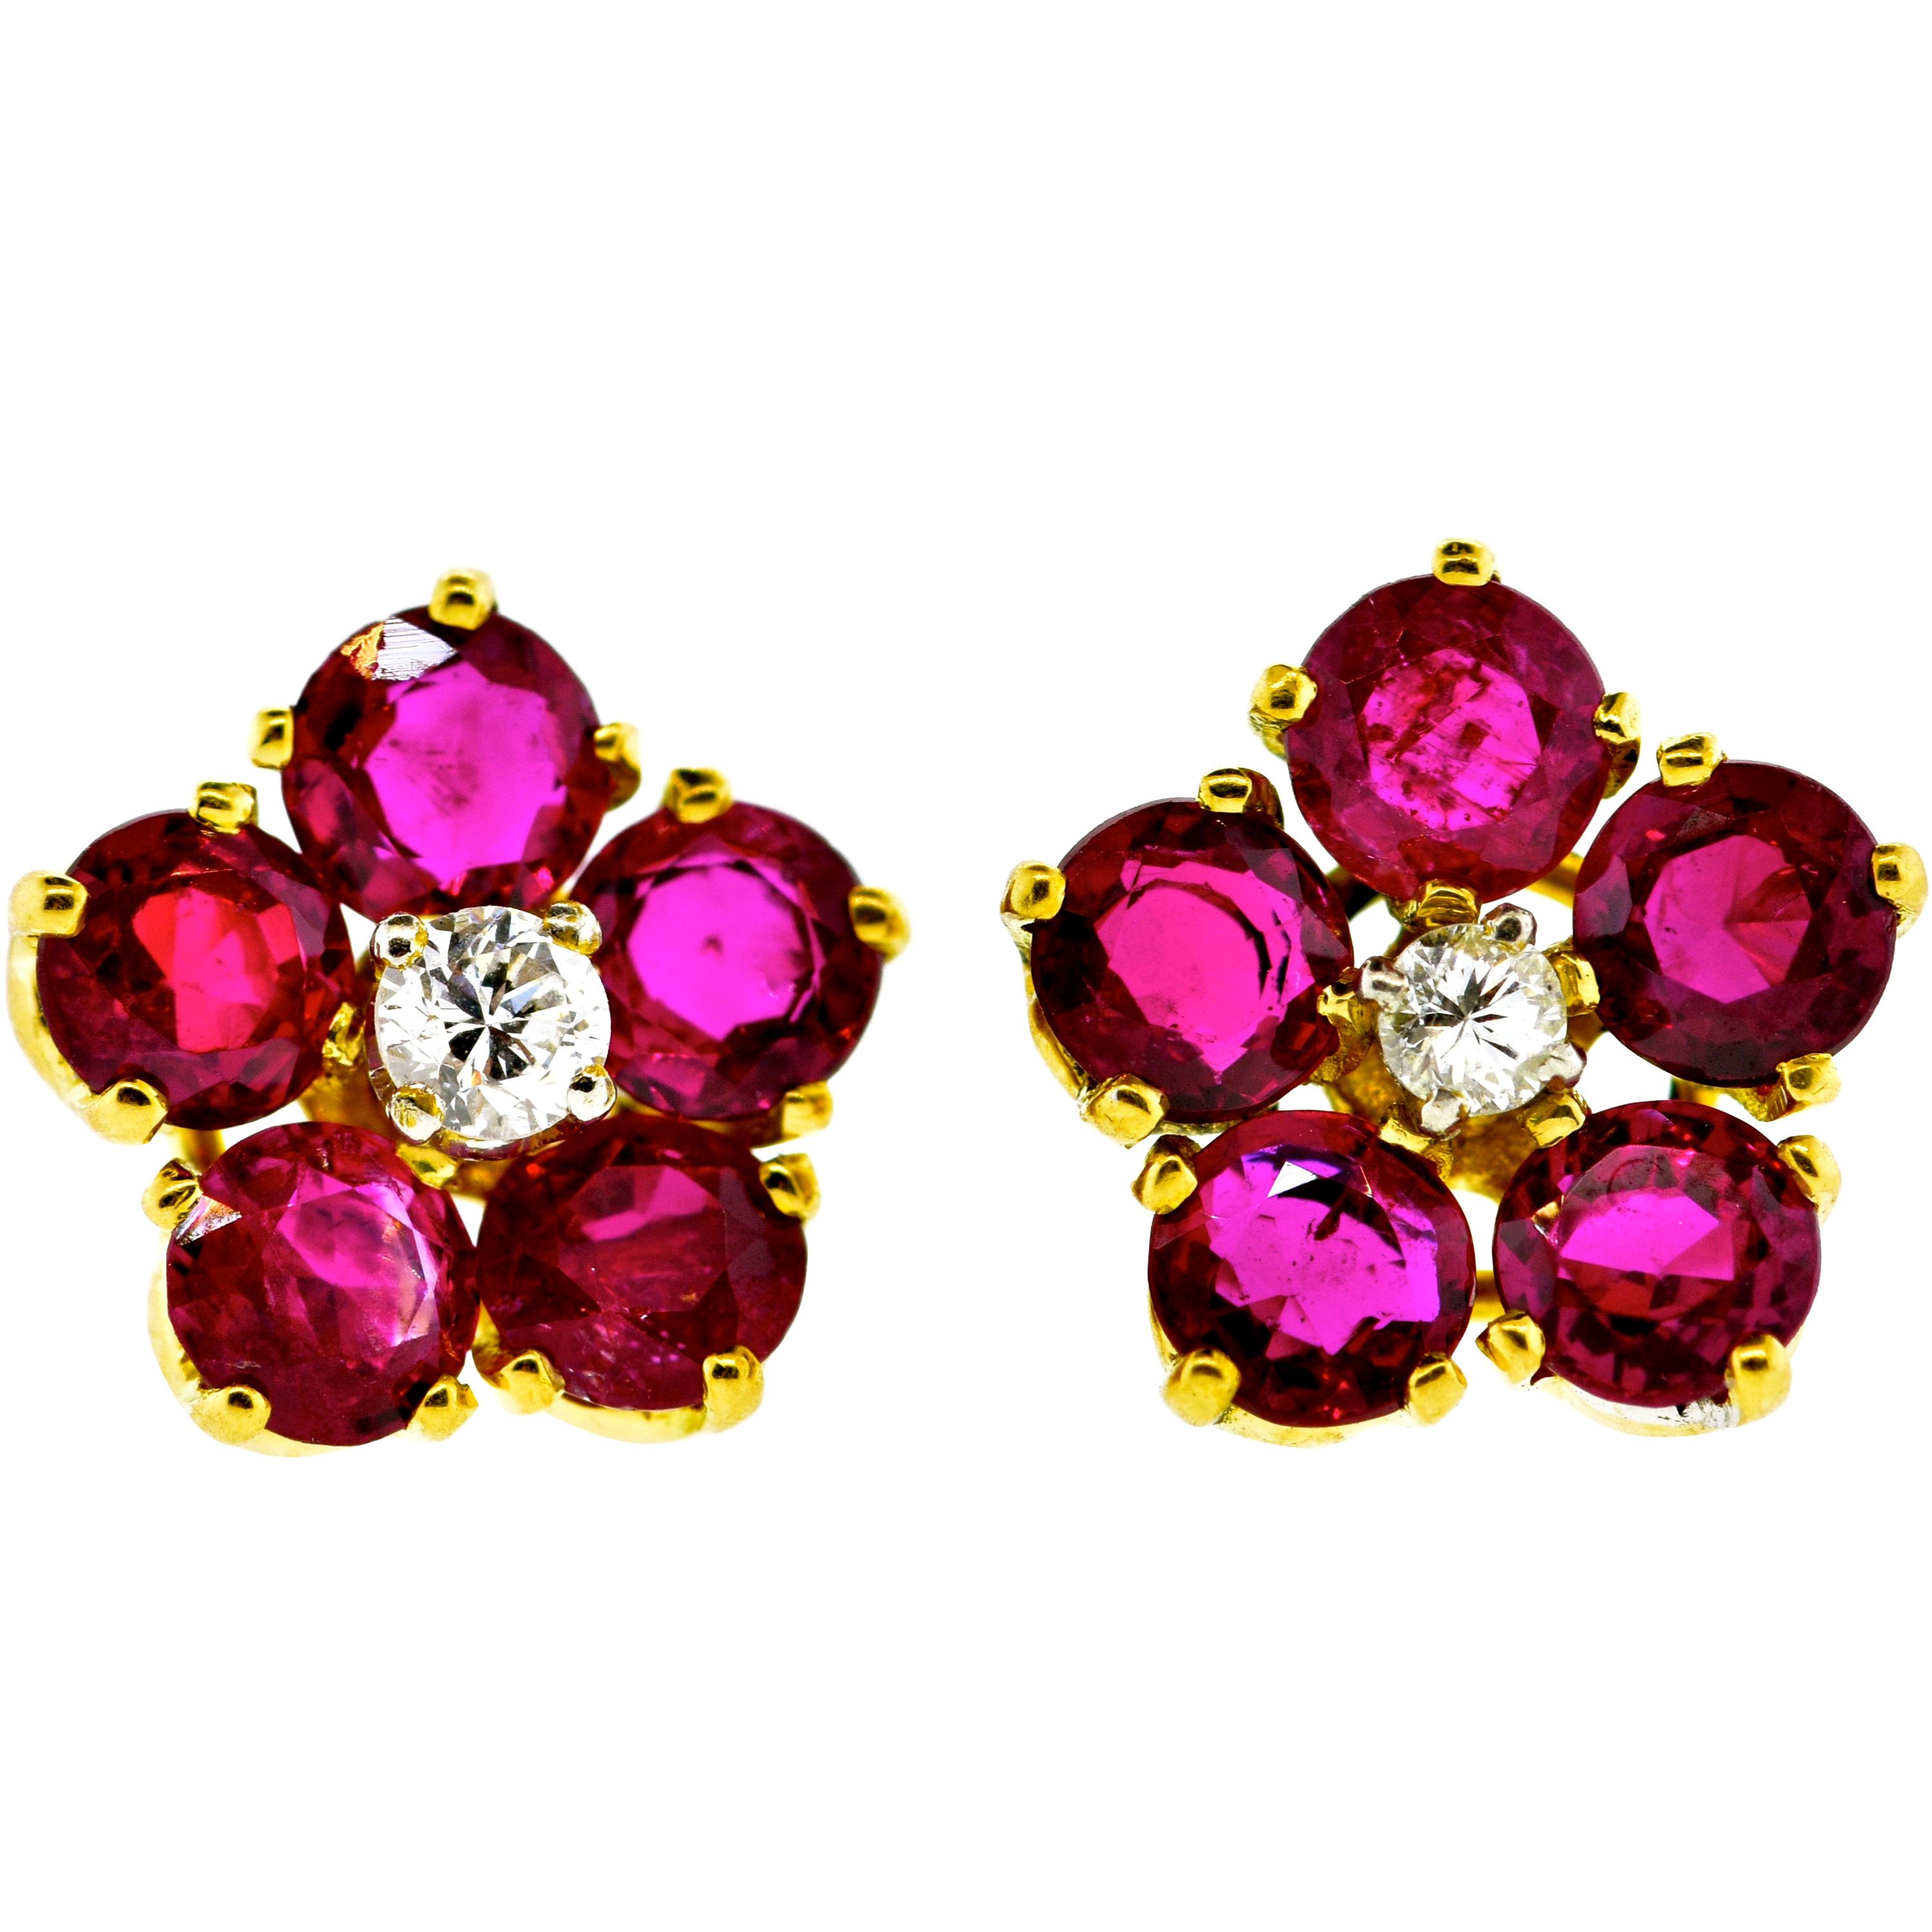 Burma Ruby and Diamond Earrings by Pierre/Famille